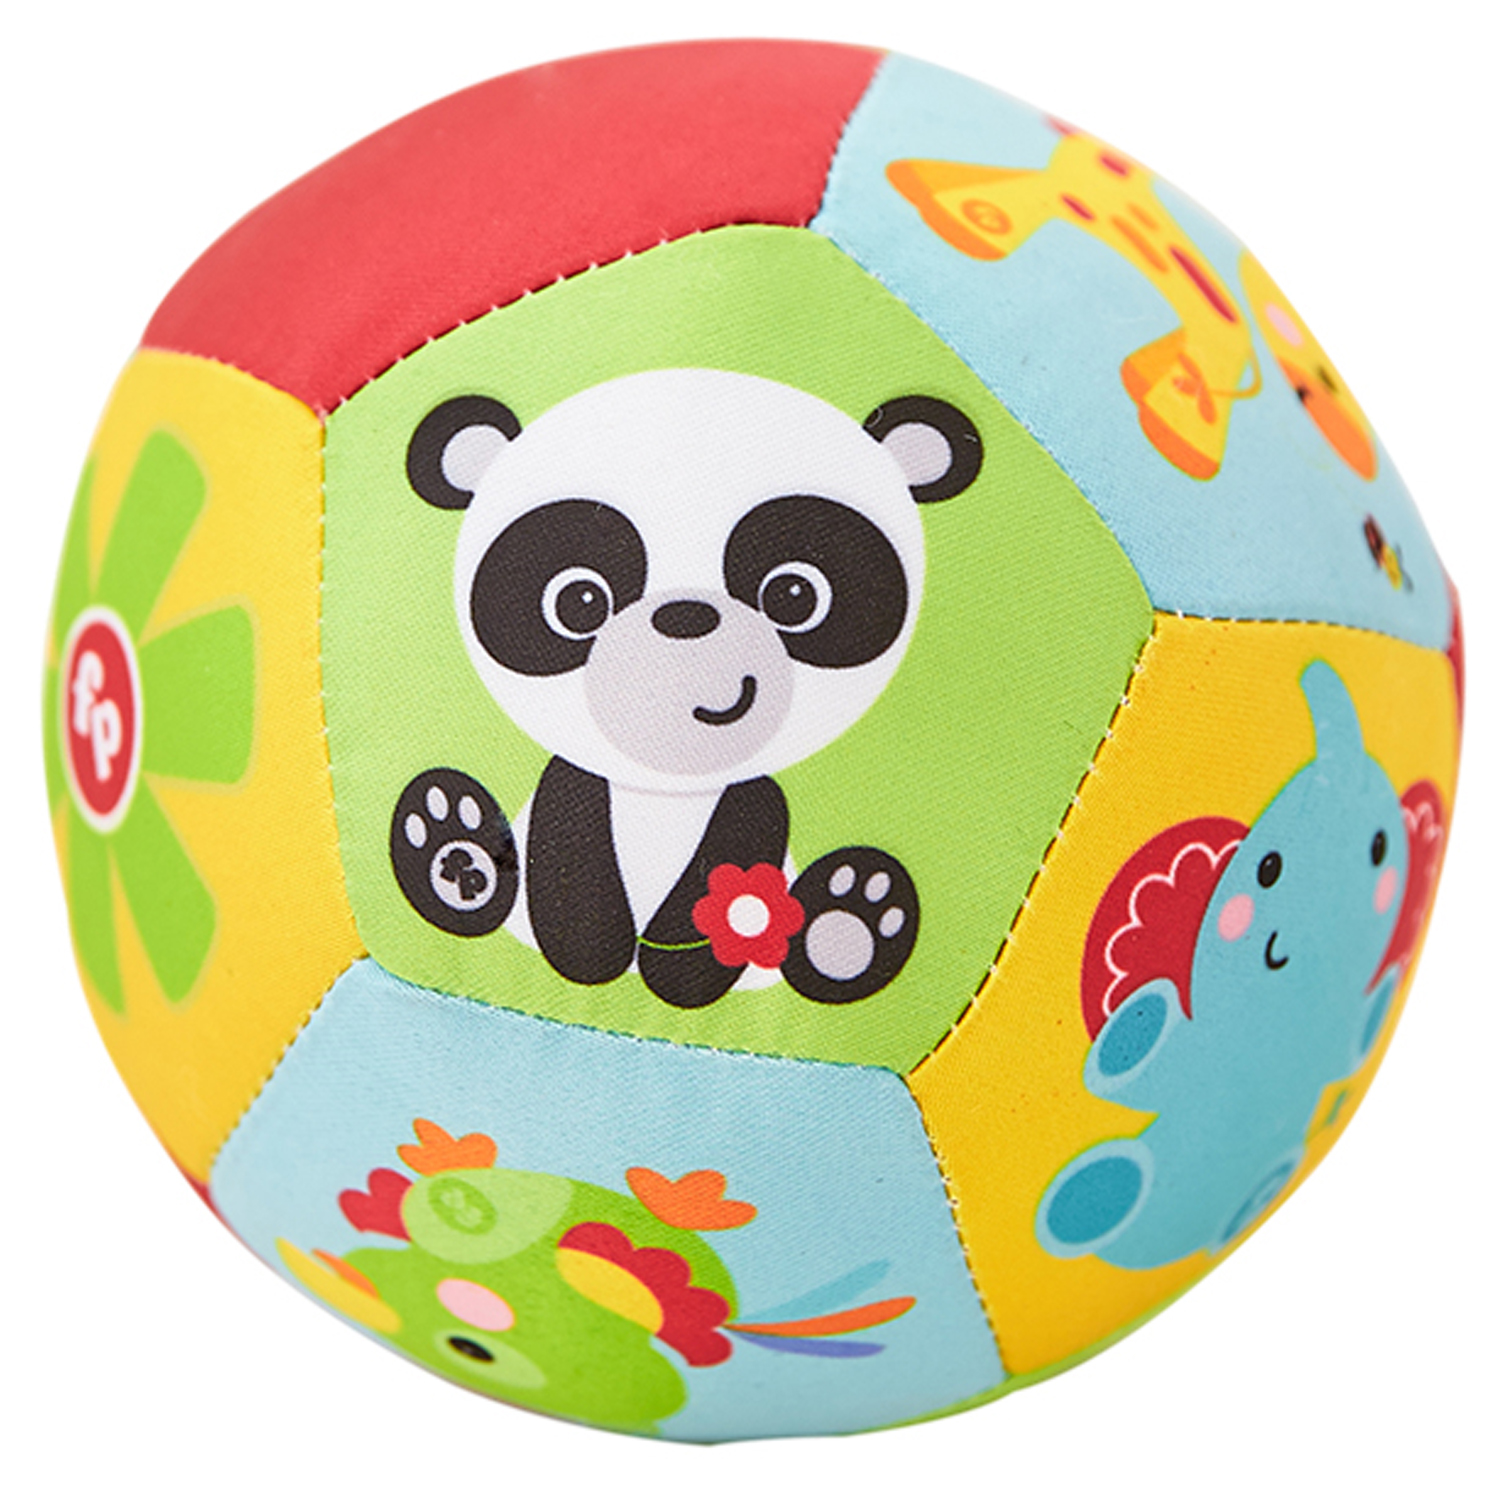 美国费雪动物认知婴儿布球 4寸宝宝手抓球玩具摇铃球铃铛球婴儿球